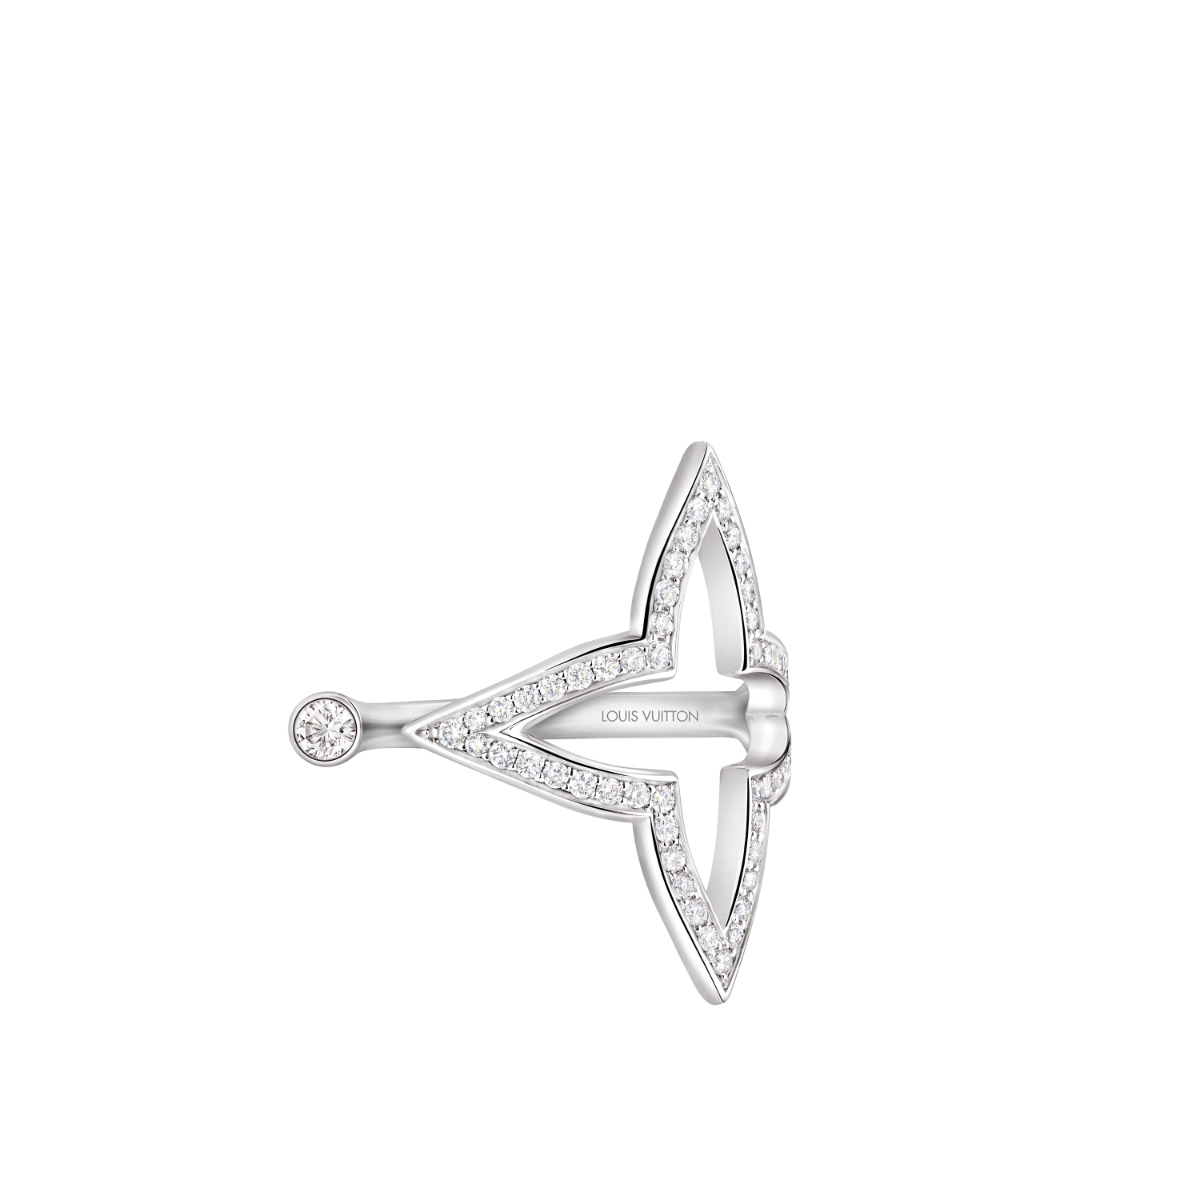 Louis Vuitton Monogram Play Ring